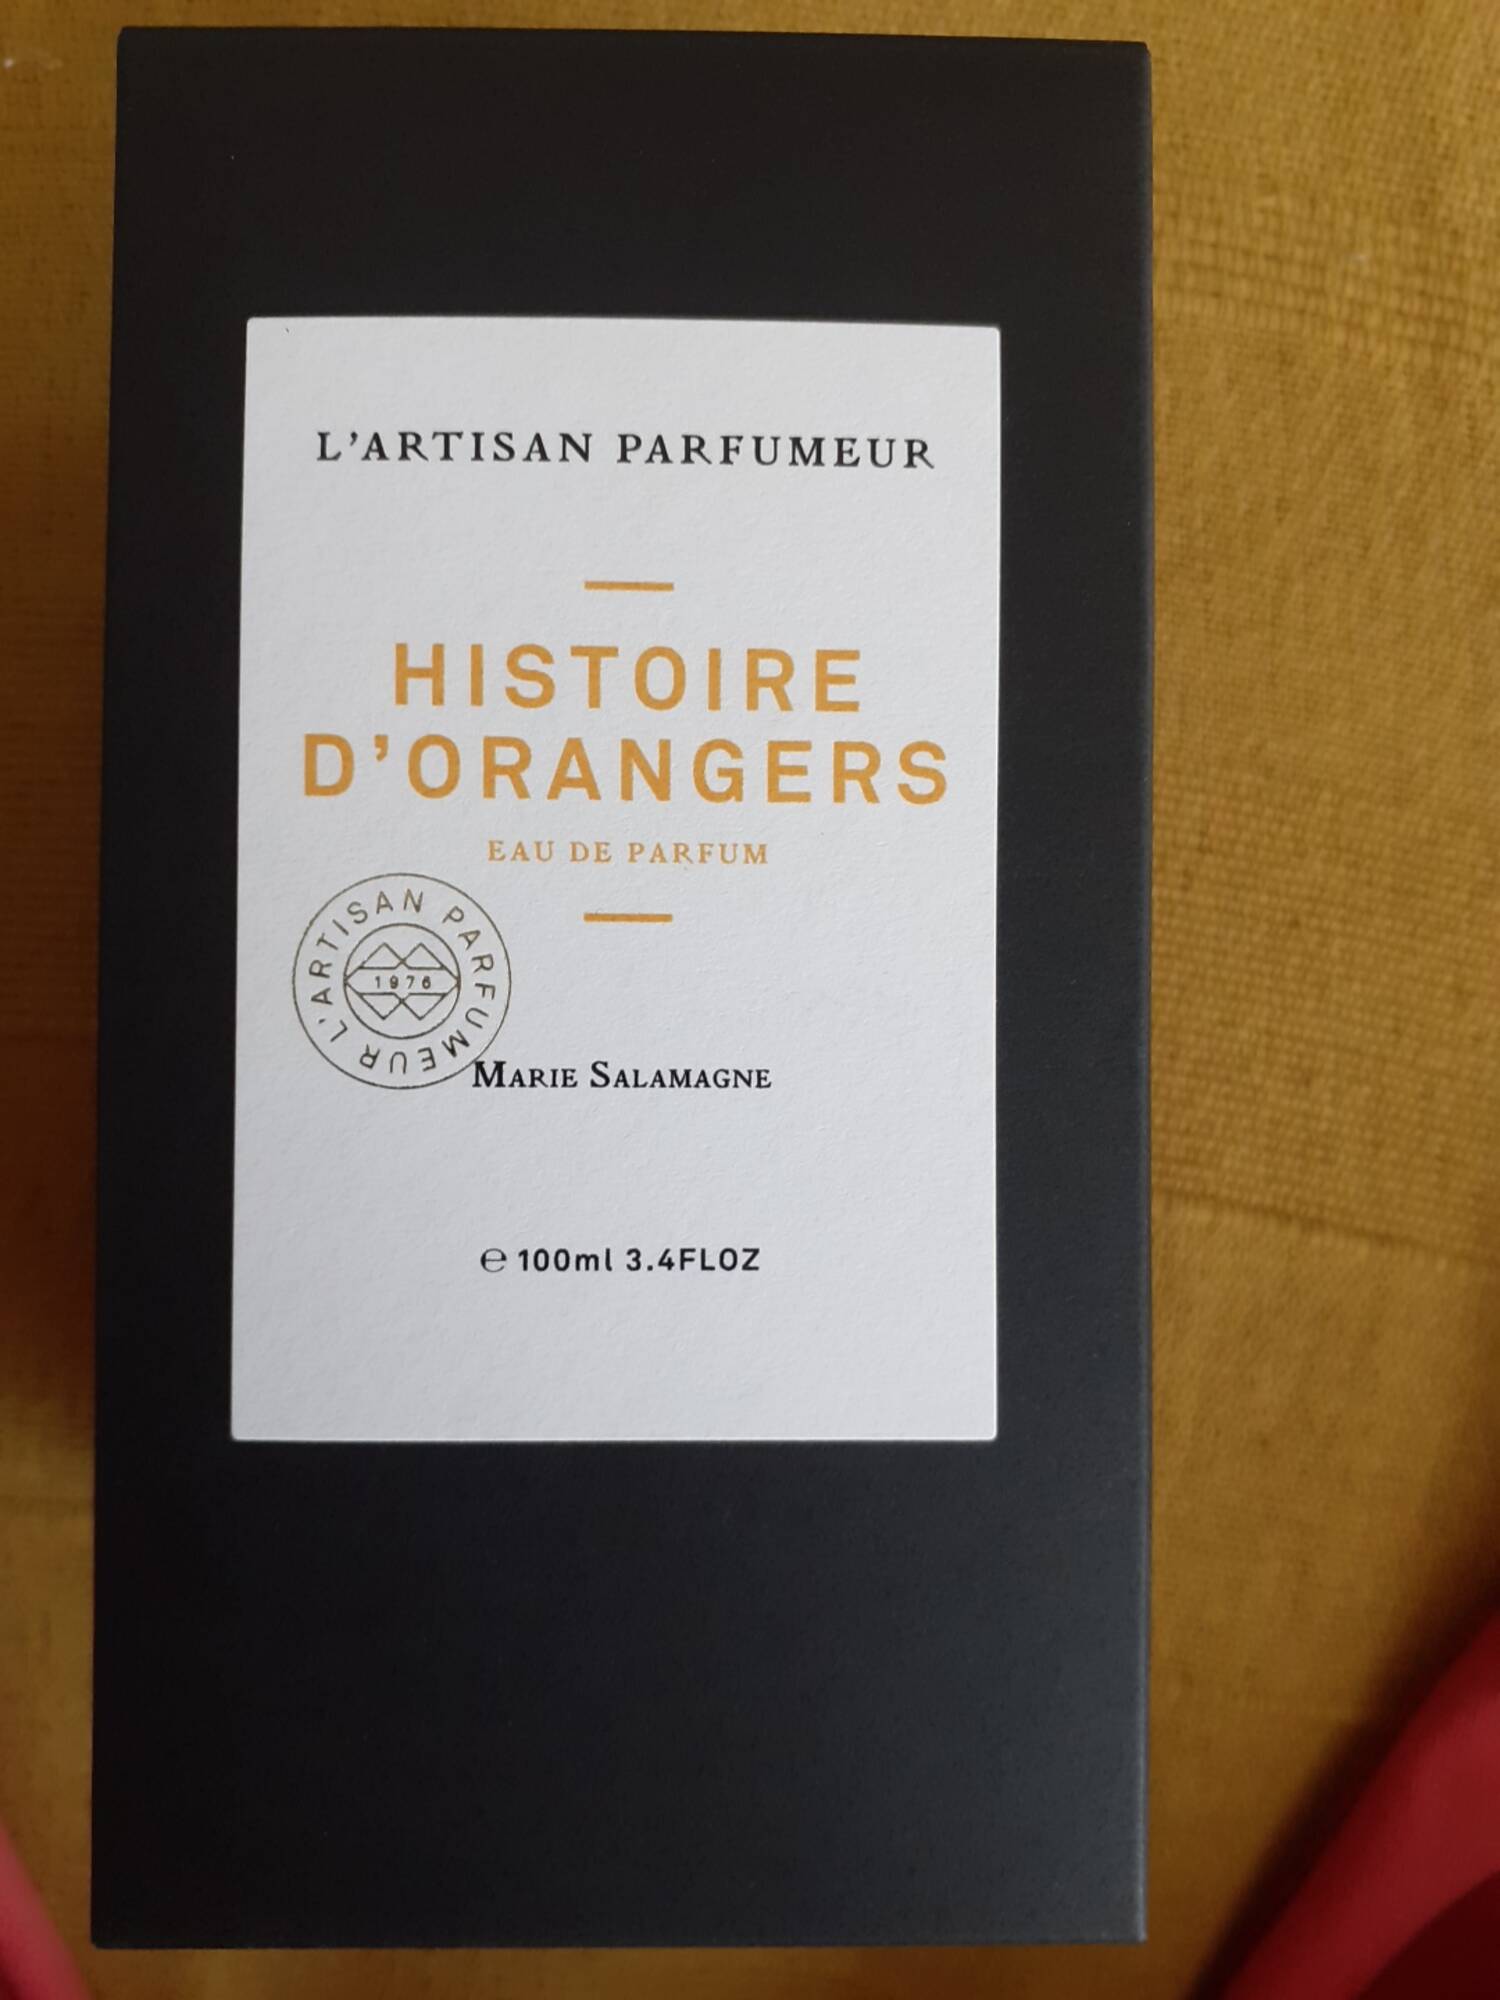 L'ARTISAN PARFUMEUR - Histoire d'orangers - Eau de parfum